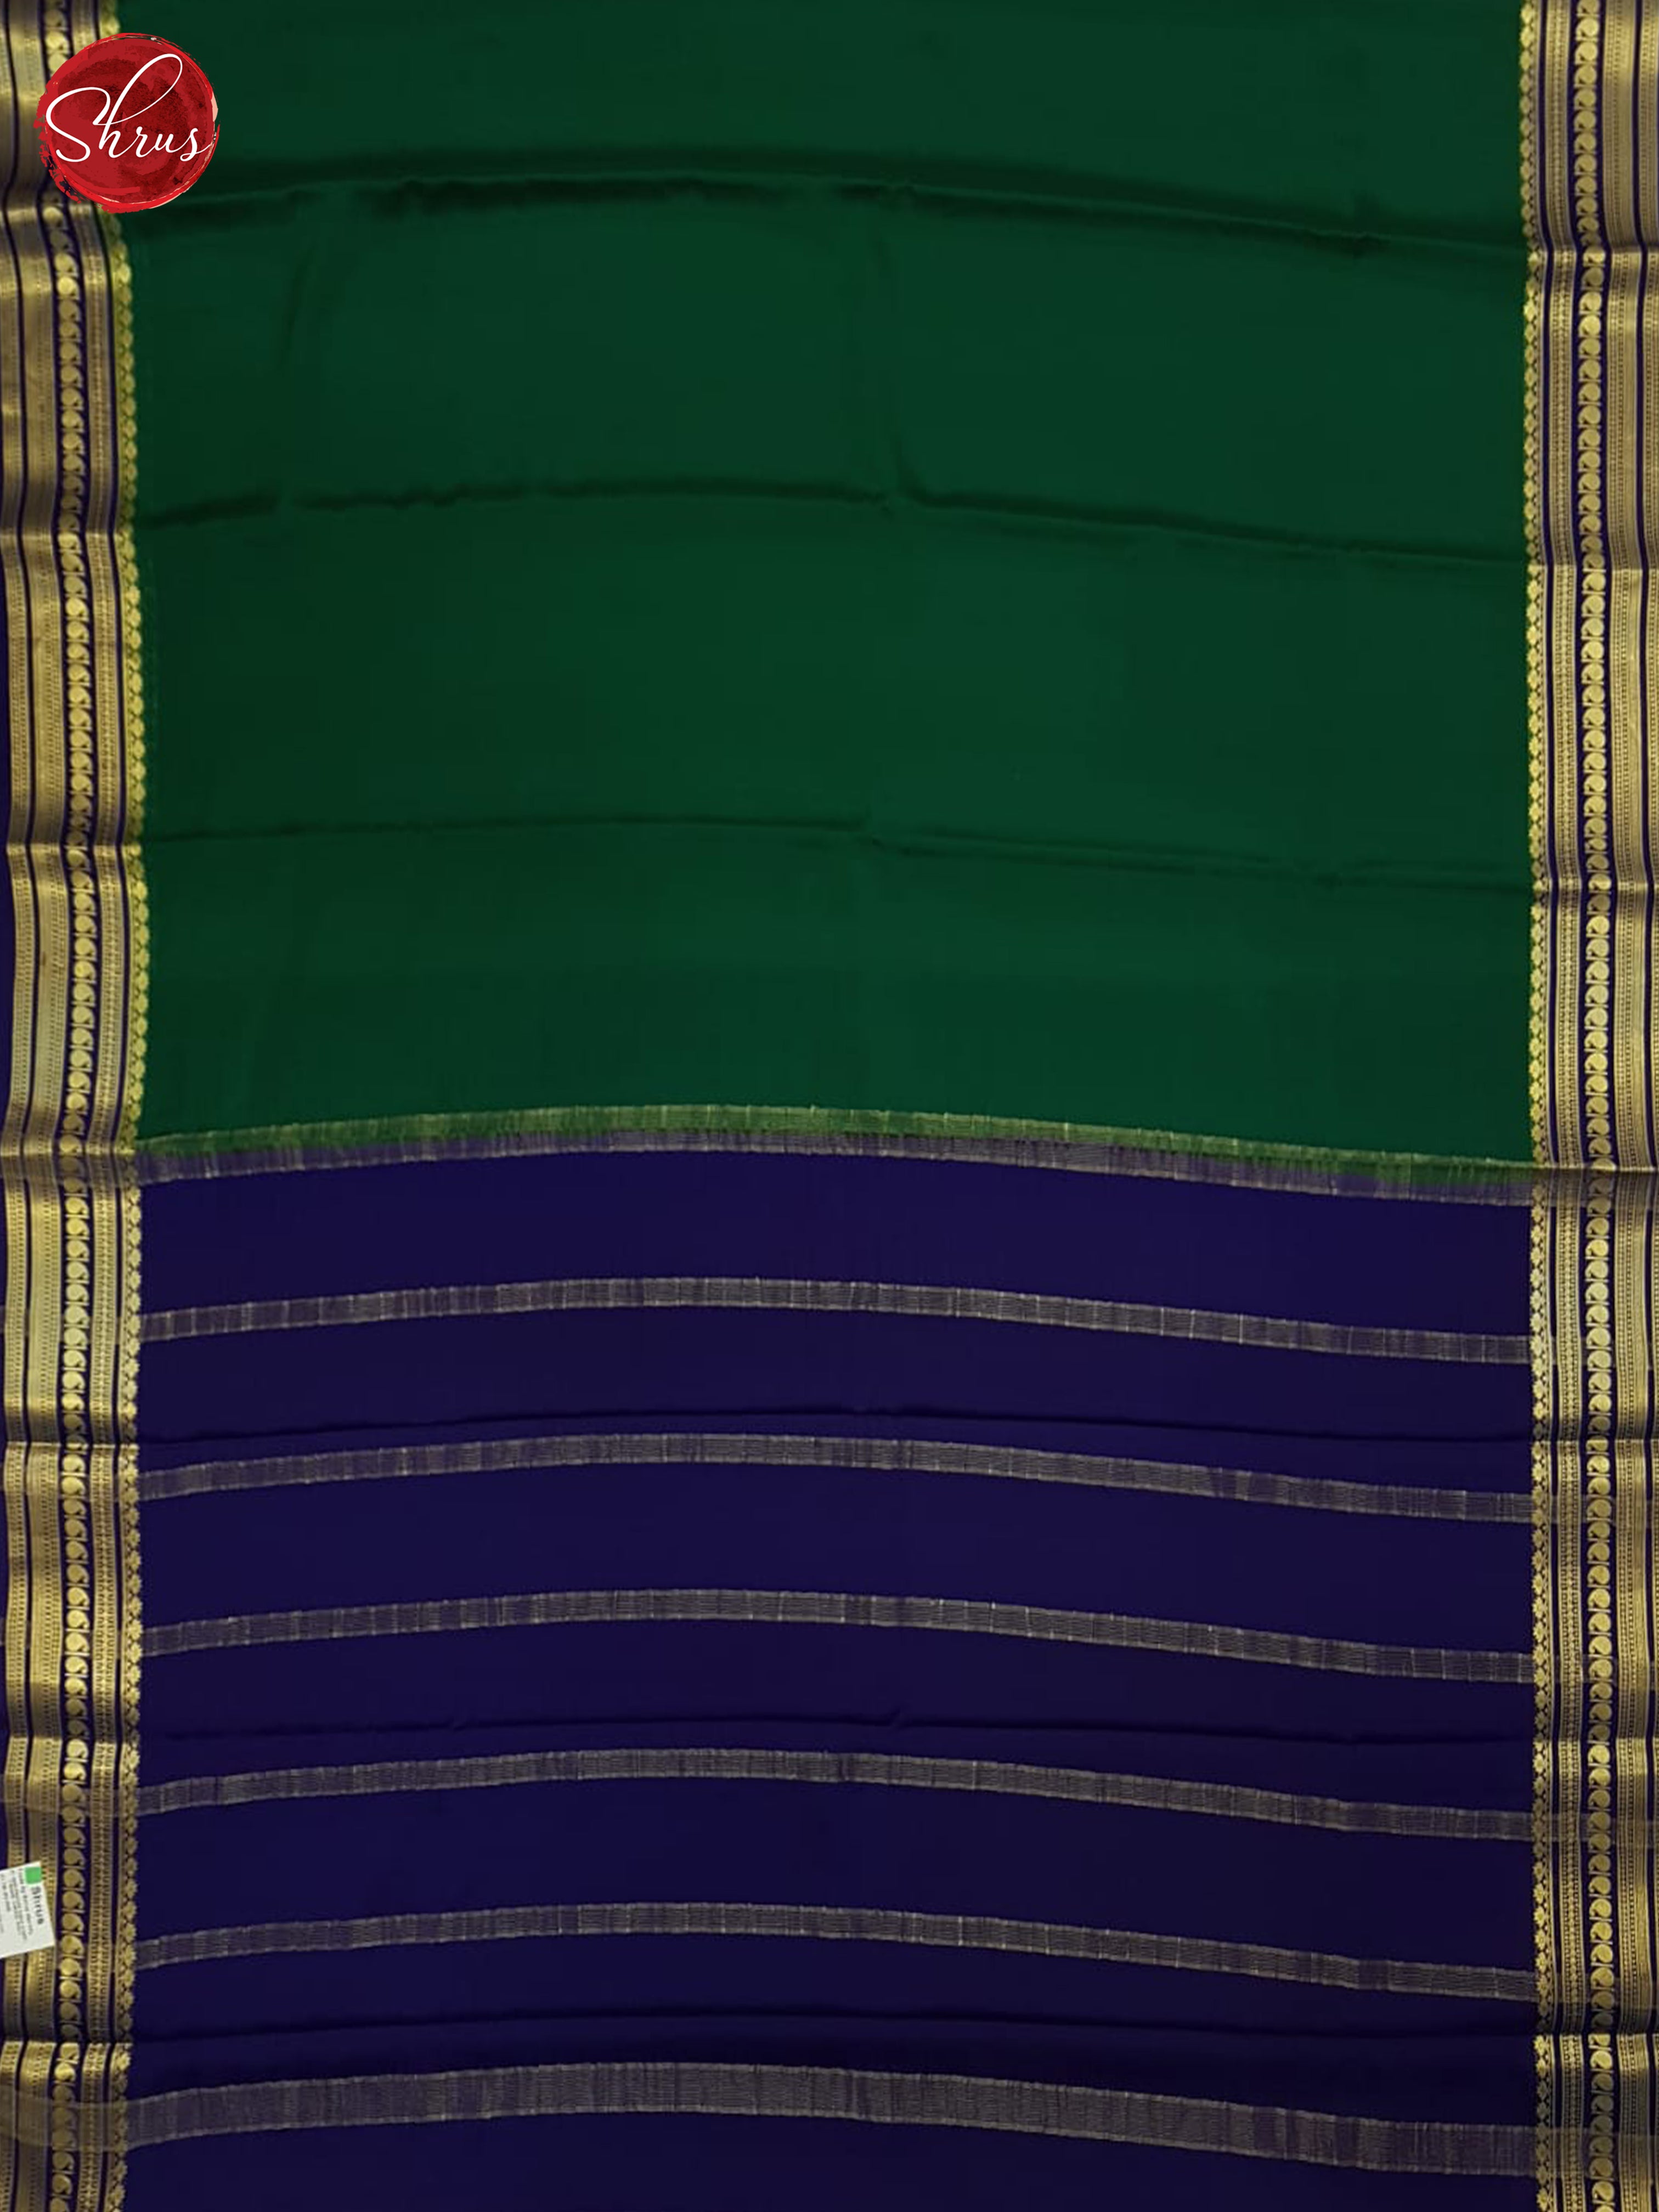 Green And Blue- Mysore Silk Saree - Shop on ShrusEternity.com